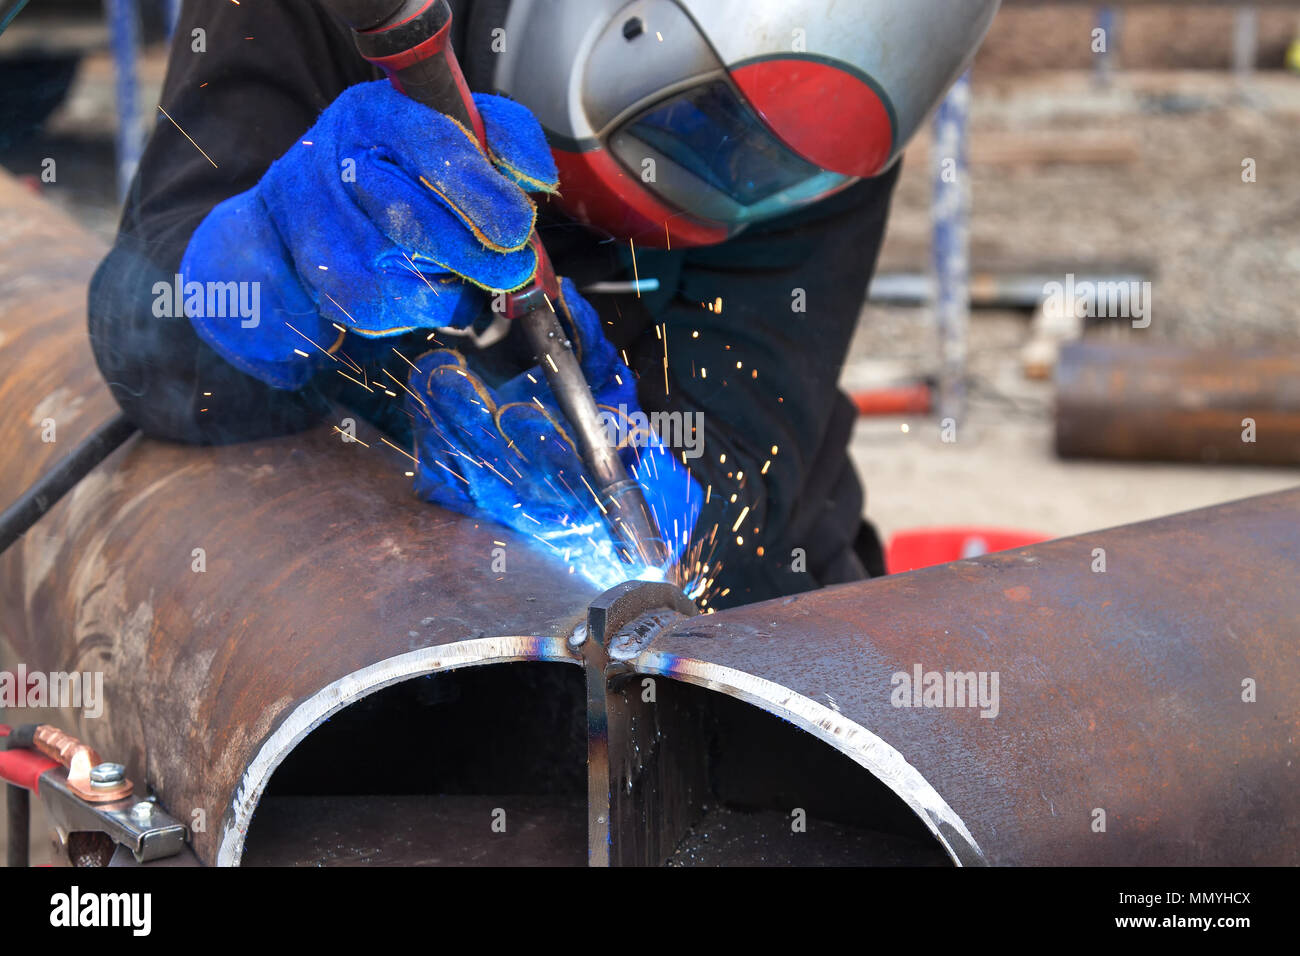 Welding work, welder welding metal material in heavy industry manufacturing, video clip Stock Photo